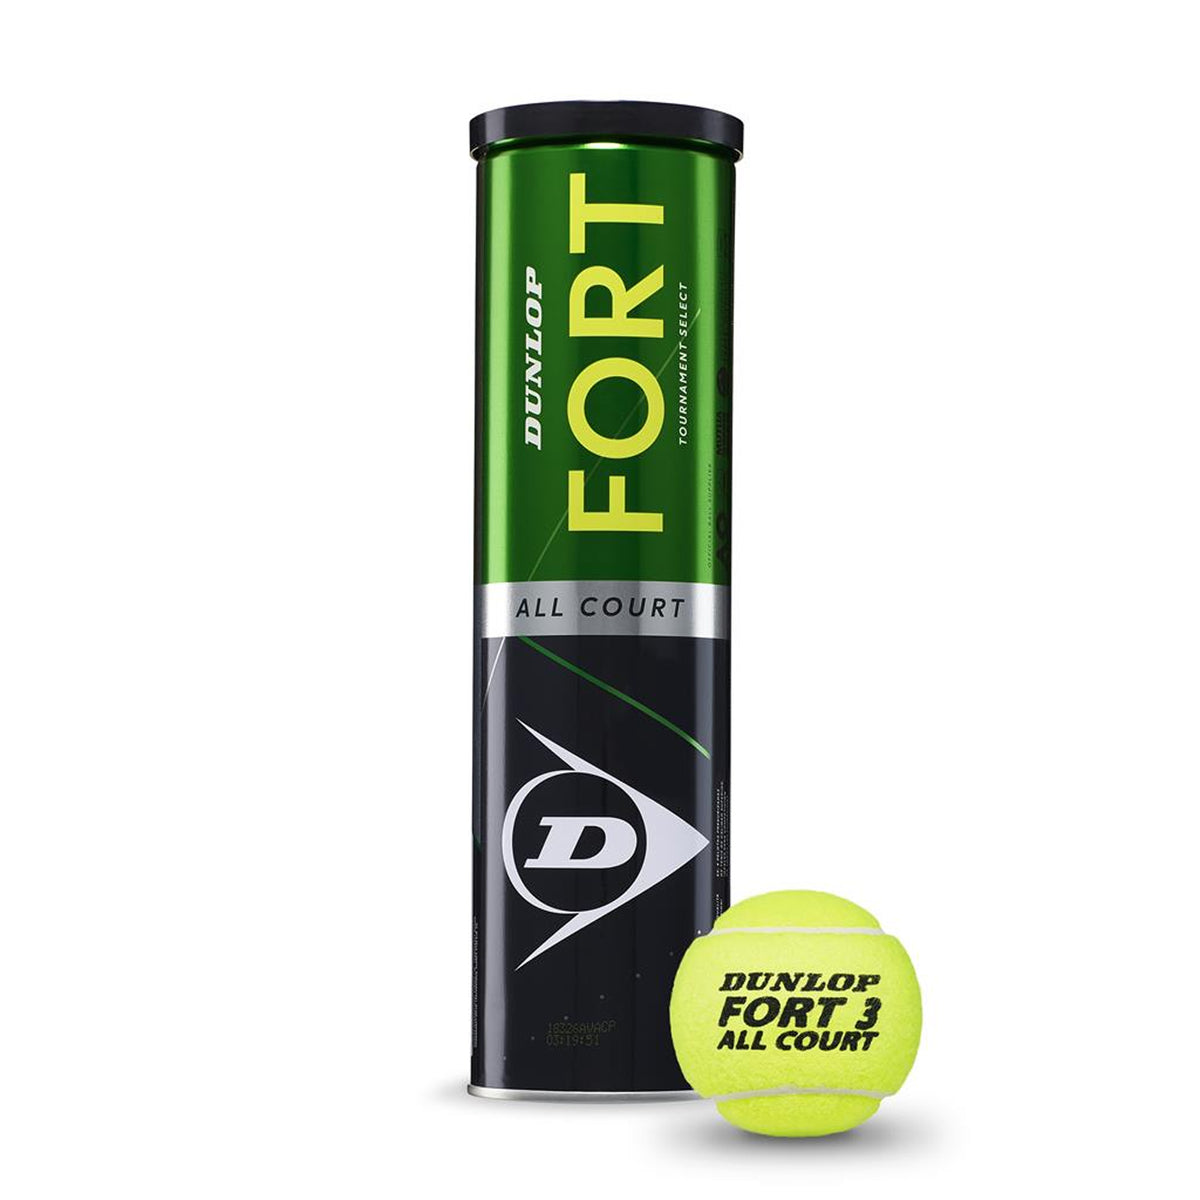 Dunlop Fort All Court Tennis Ball 4 Ball Can